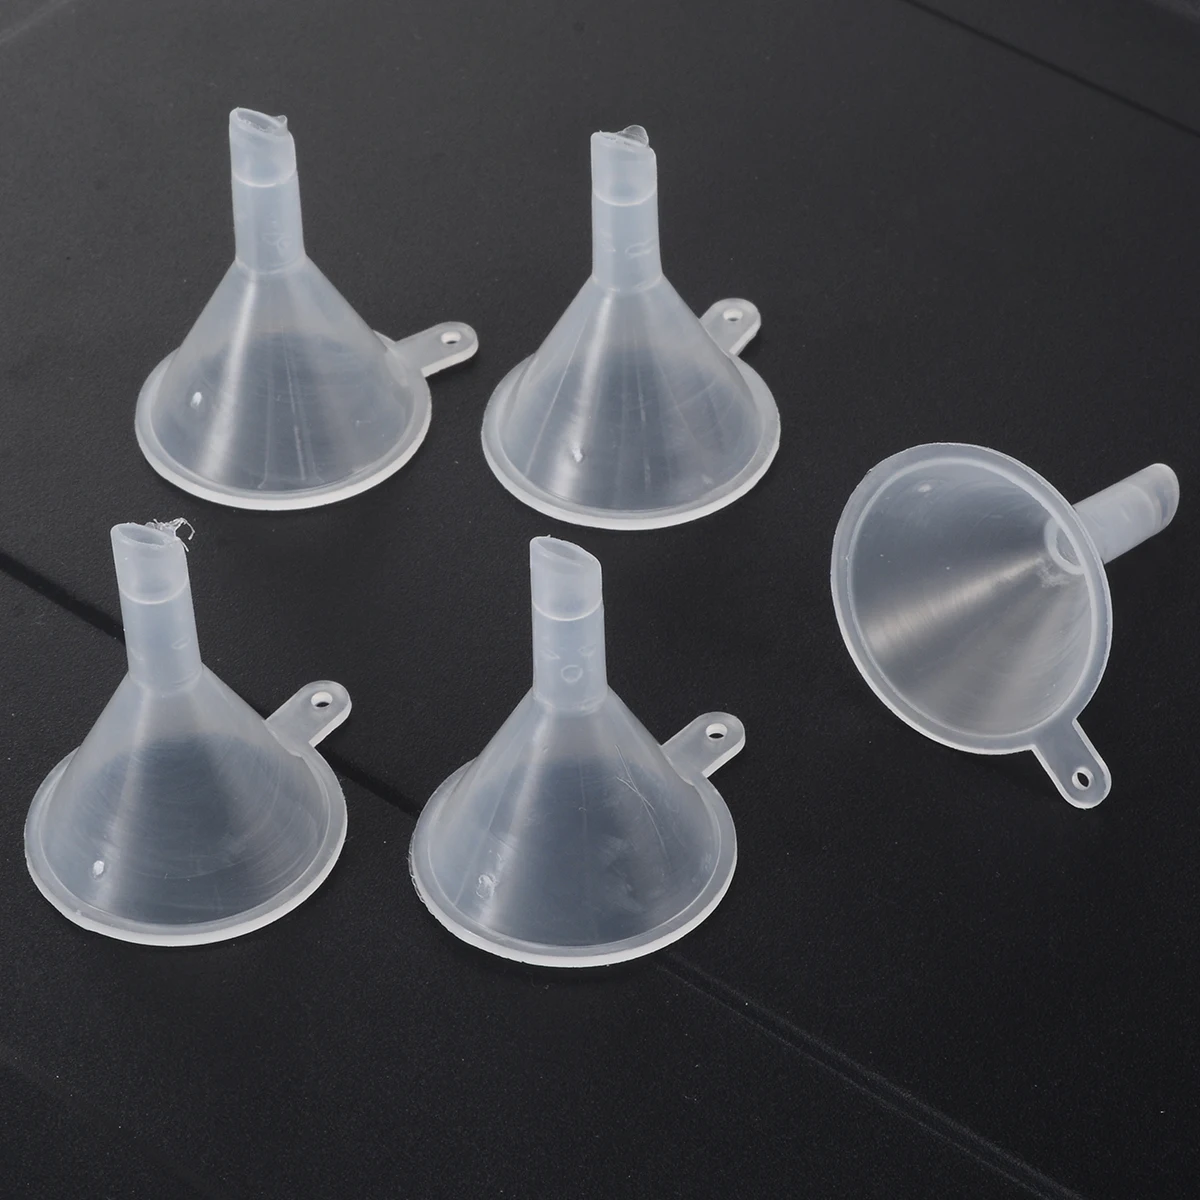 5pcs Clear Mini Plastic Funnels Perfume Diffuser Oil Liquid Lab Filling Tool Kitchen Tool Gadgets